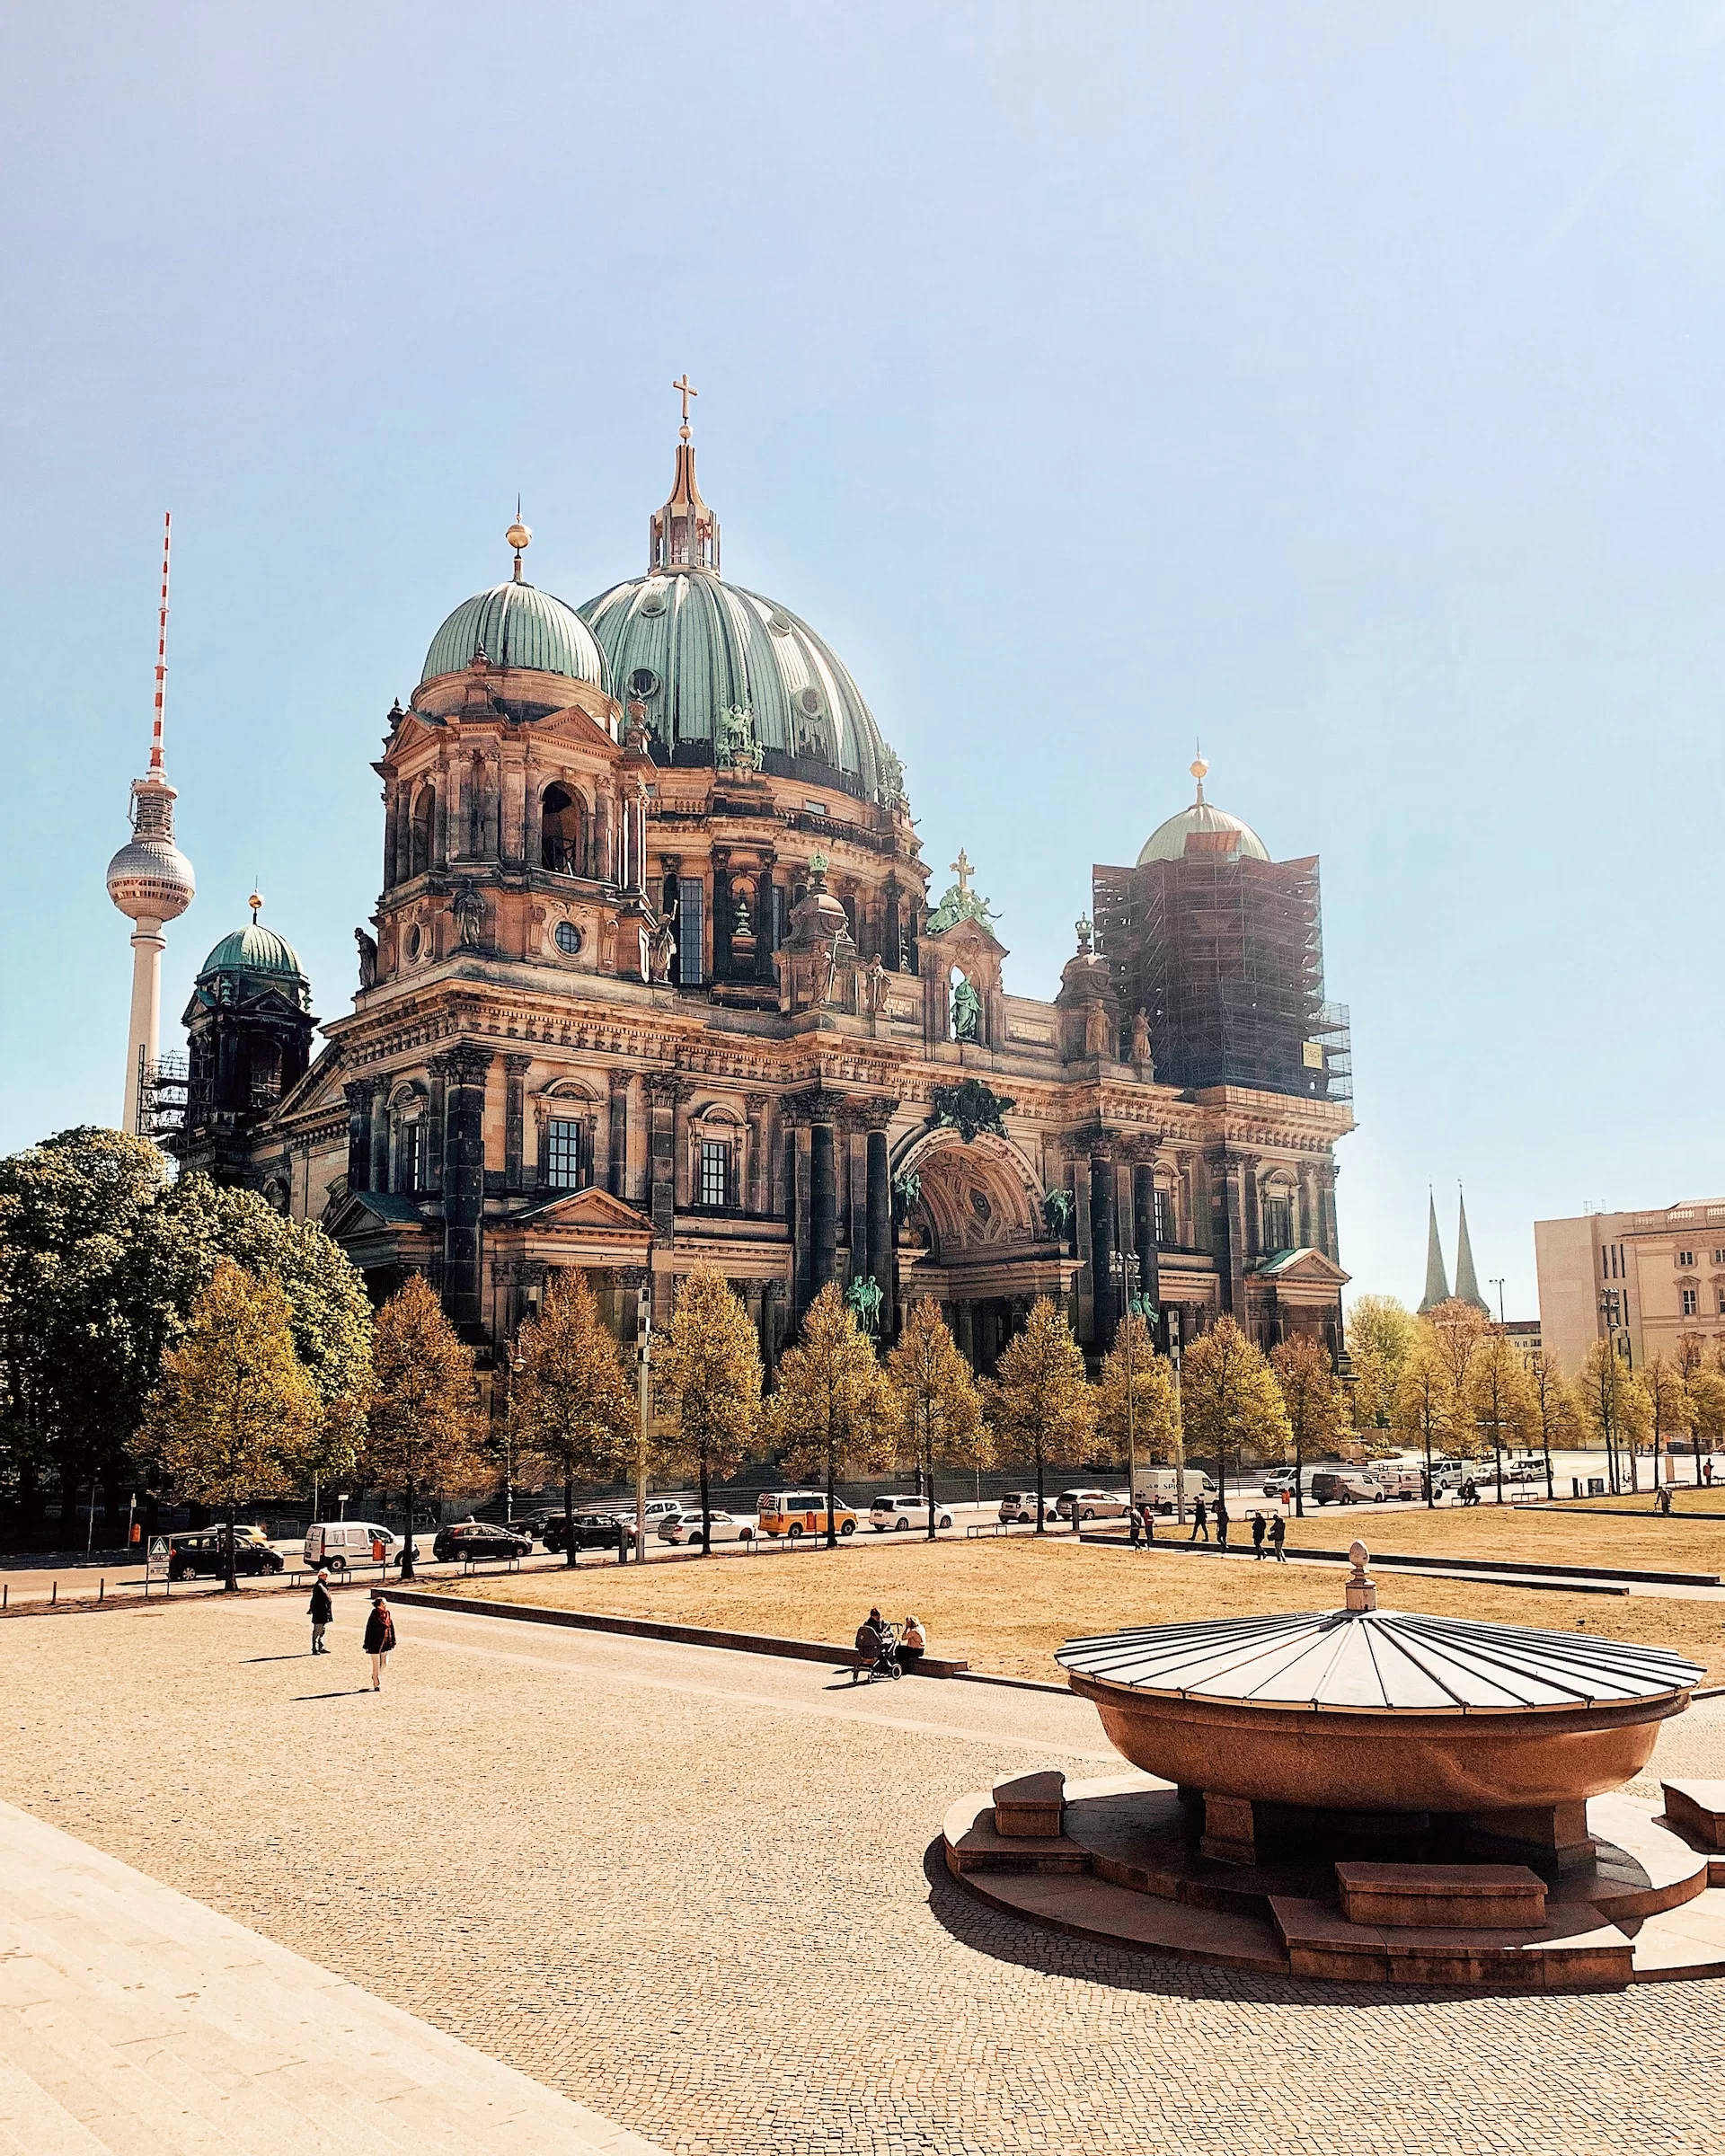 Co robić w Berlinie? 10 pomysłów